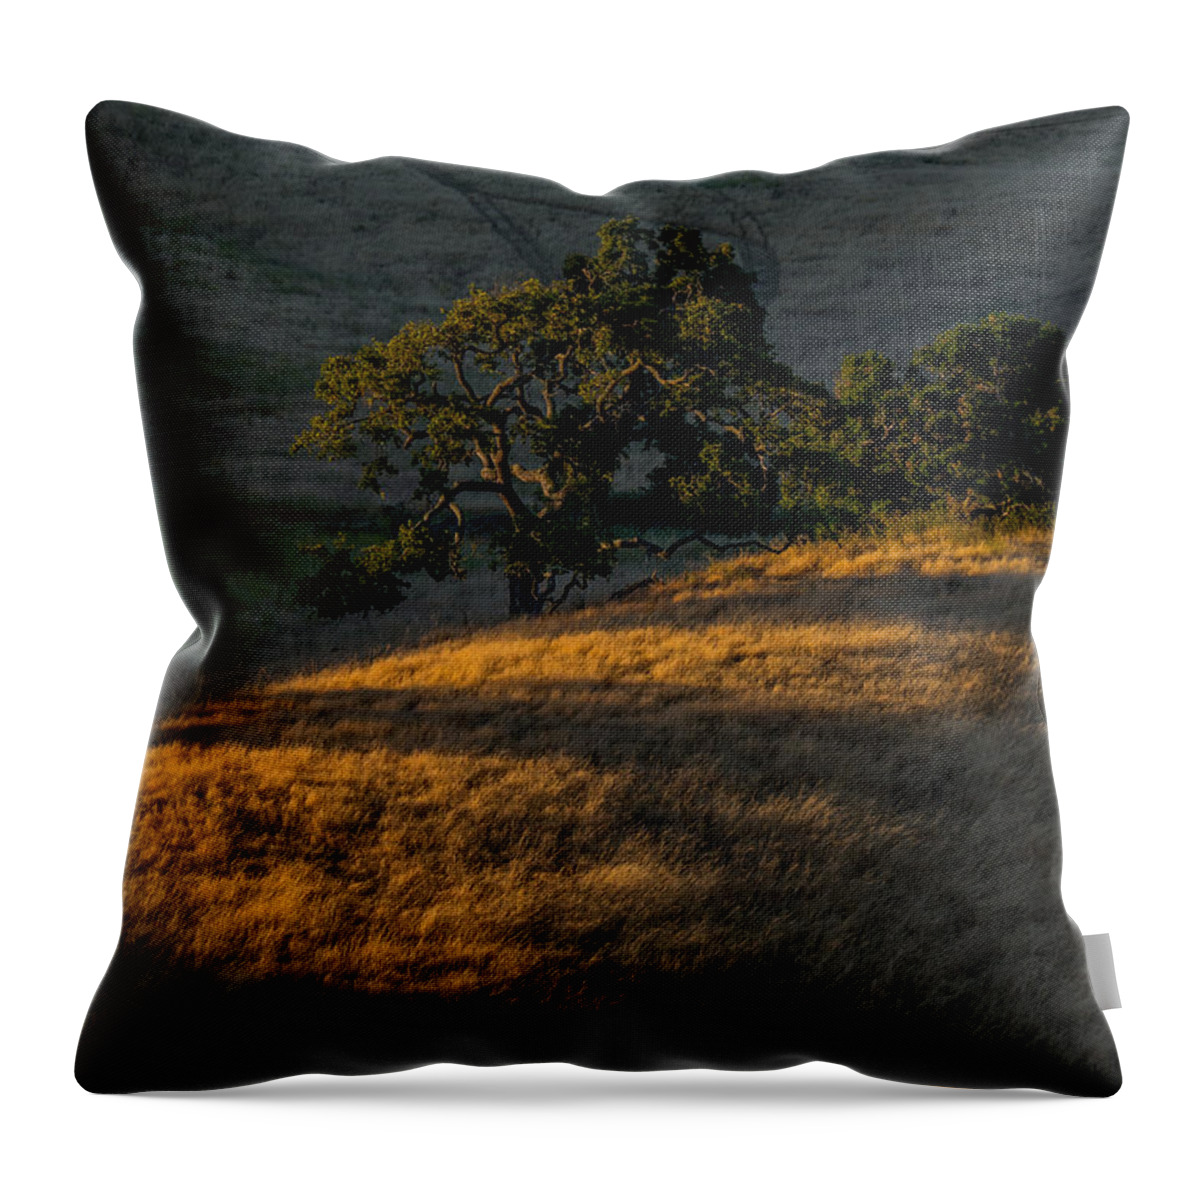 Hillside Throw Pillow featuring the photograph Last Light on the Hillside by Derek Dean